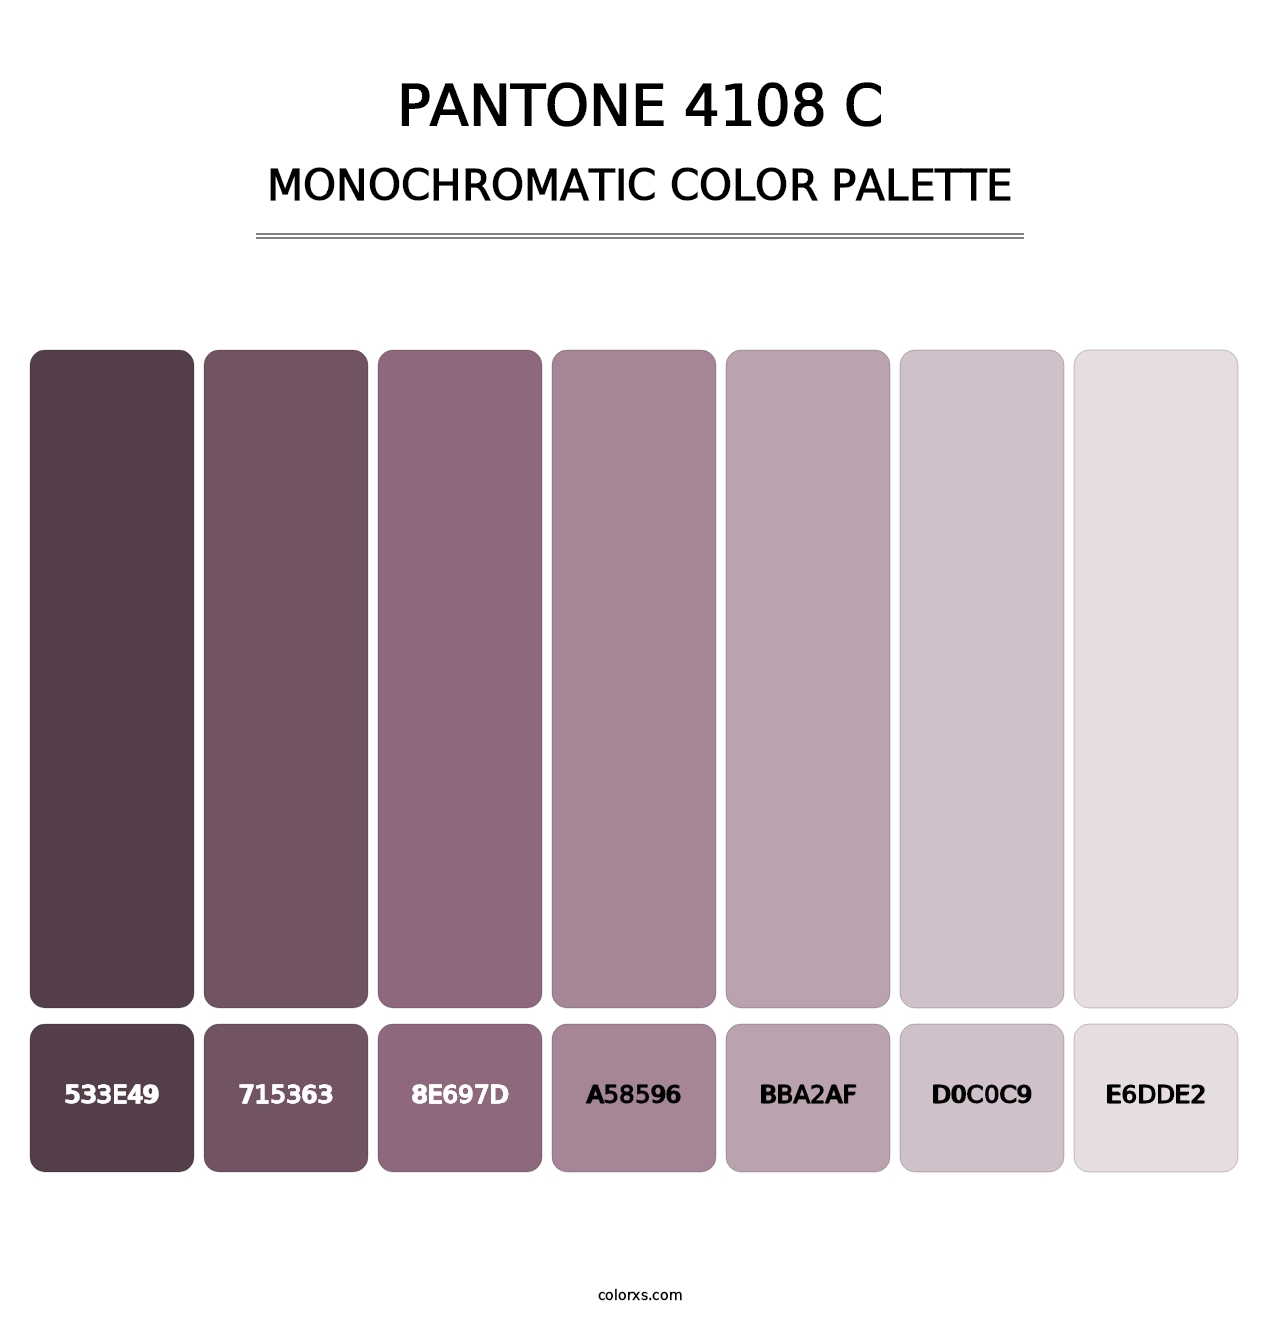 PANTONE 4108 C - Monochromatic Color Palette